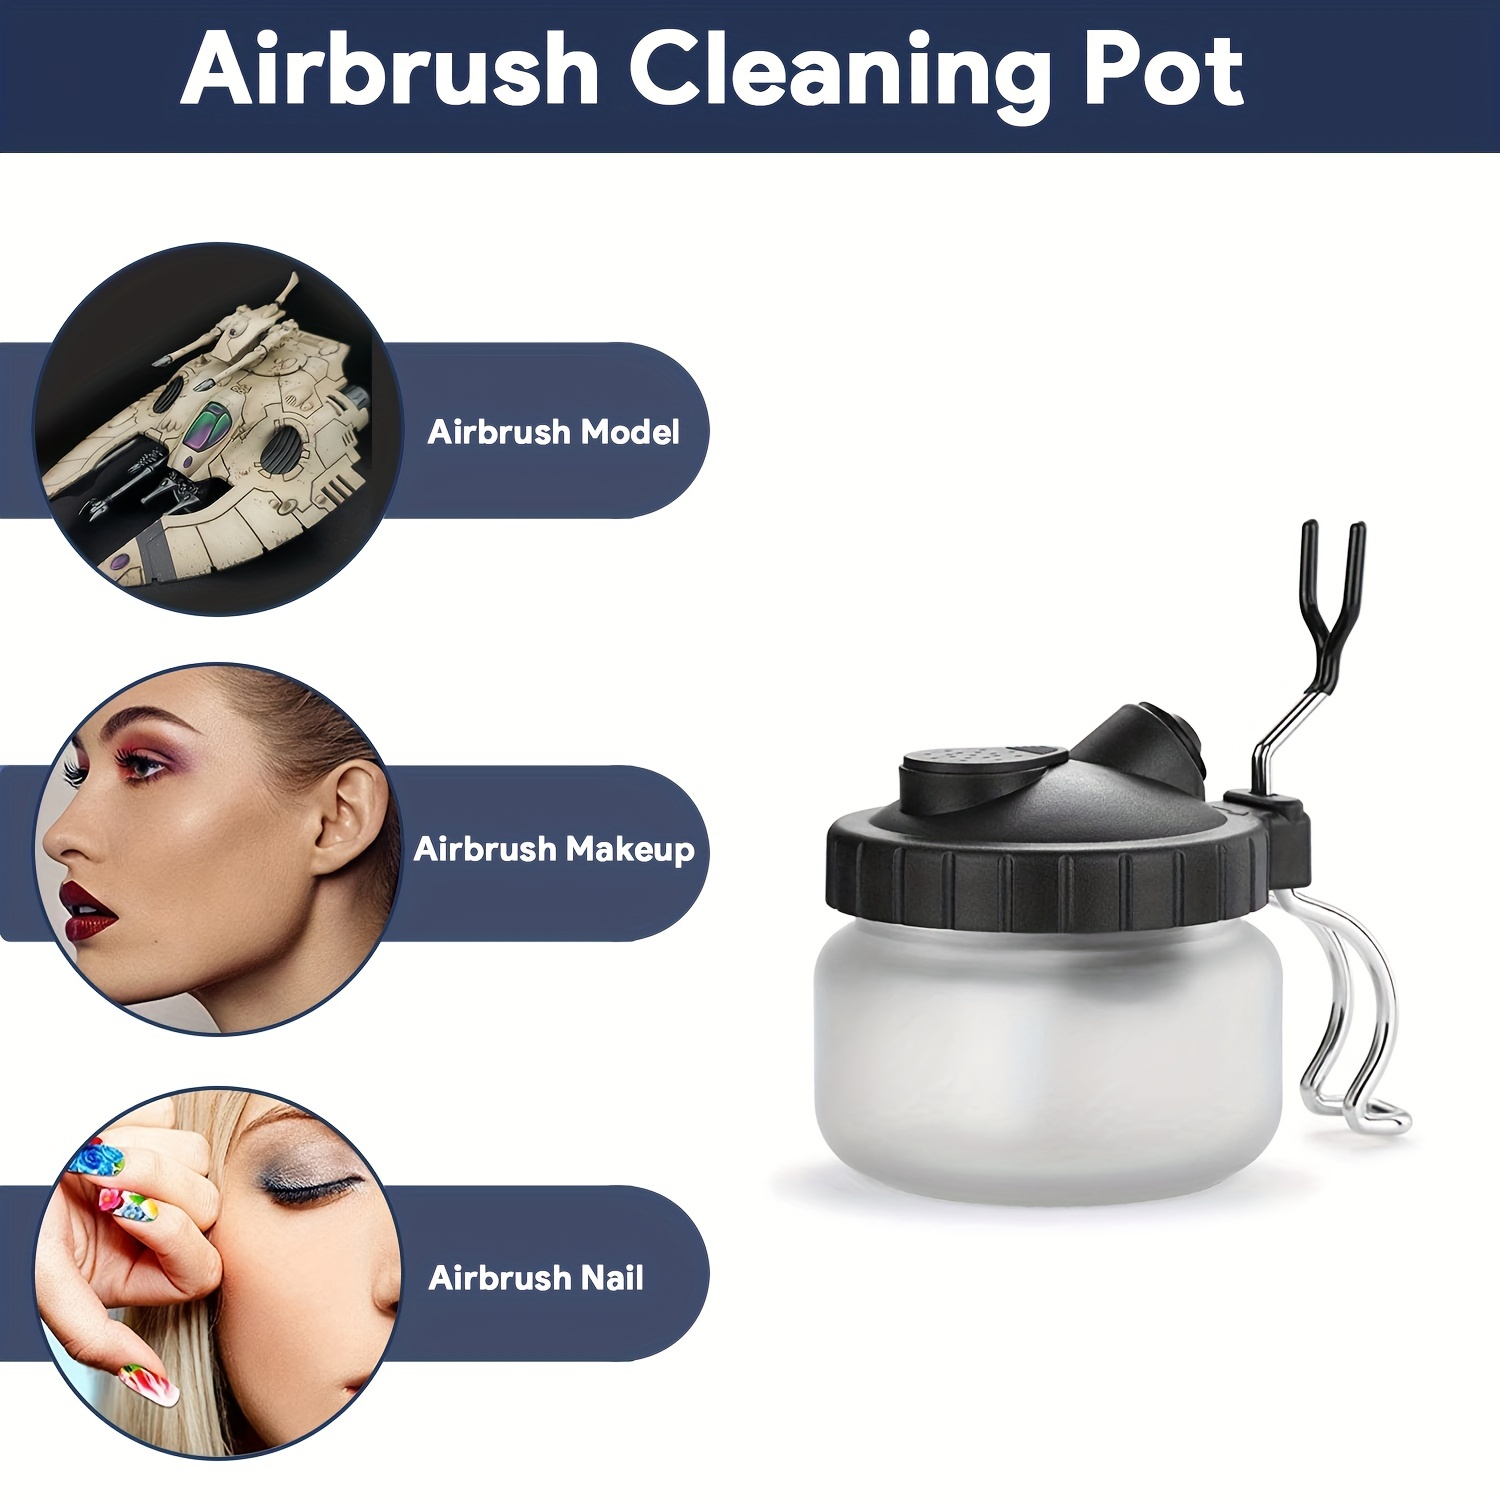 Kit de nettoyage Airbrush avec support, aiguilles de nettoyage